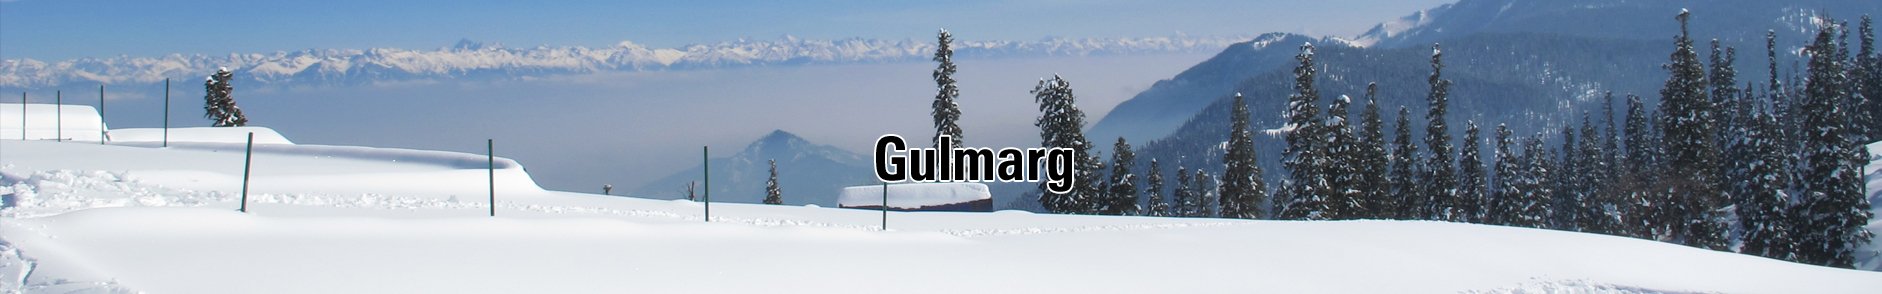 Hotel Gulmarg Meadows Gulmarg Kashmir